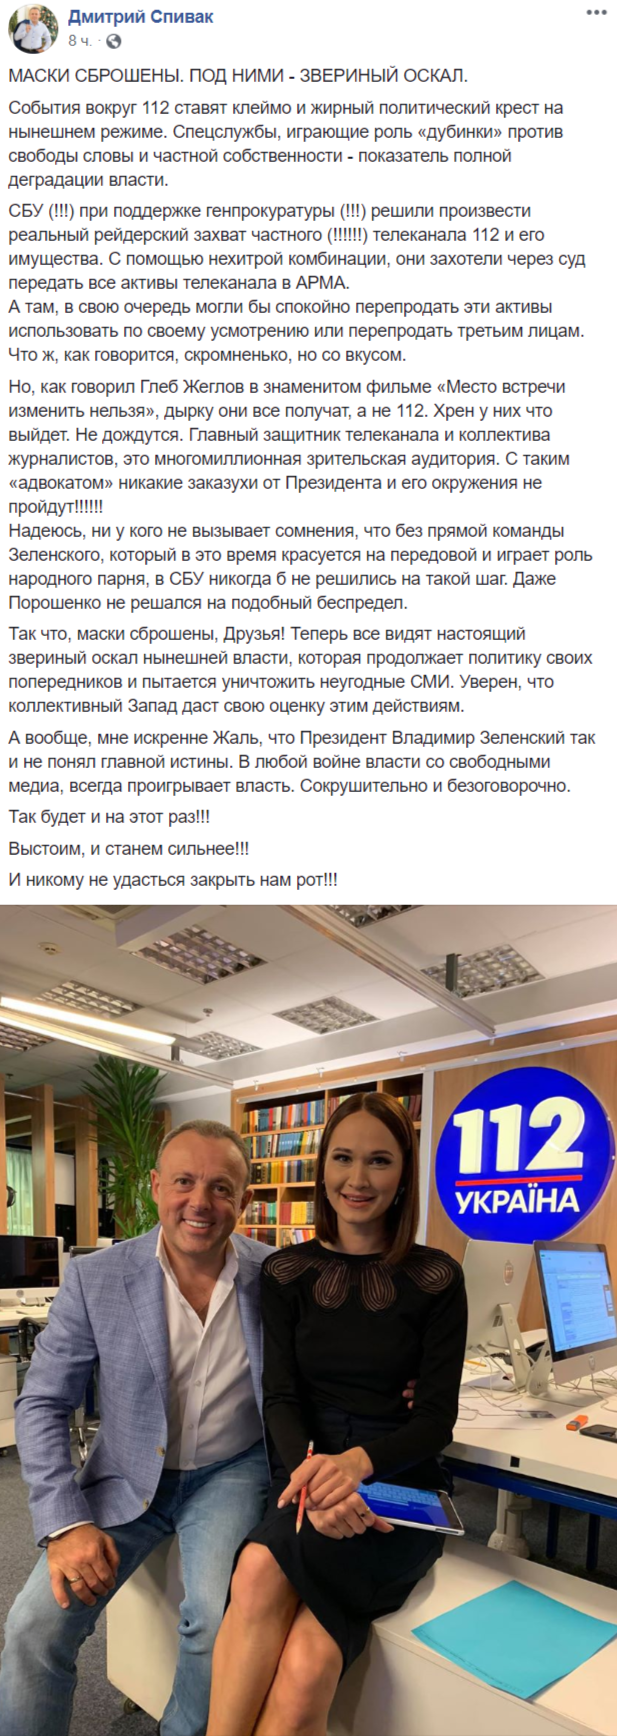 телеведущий Дмитрий Спивак в Facebook